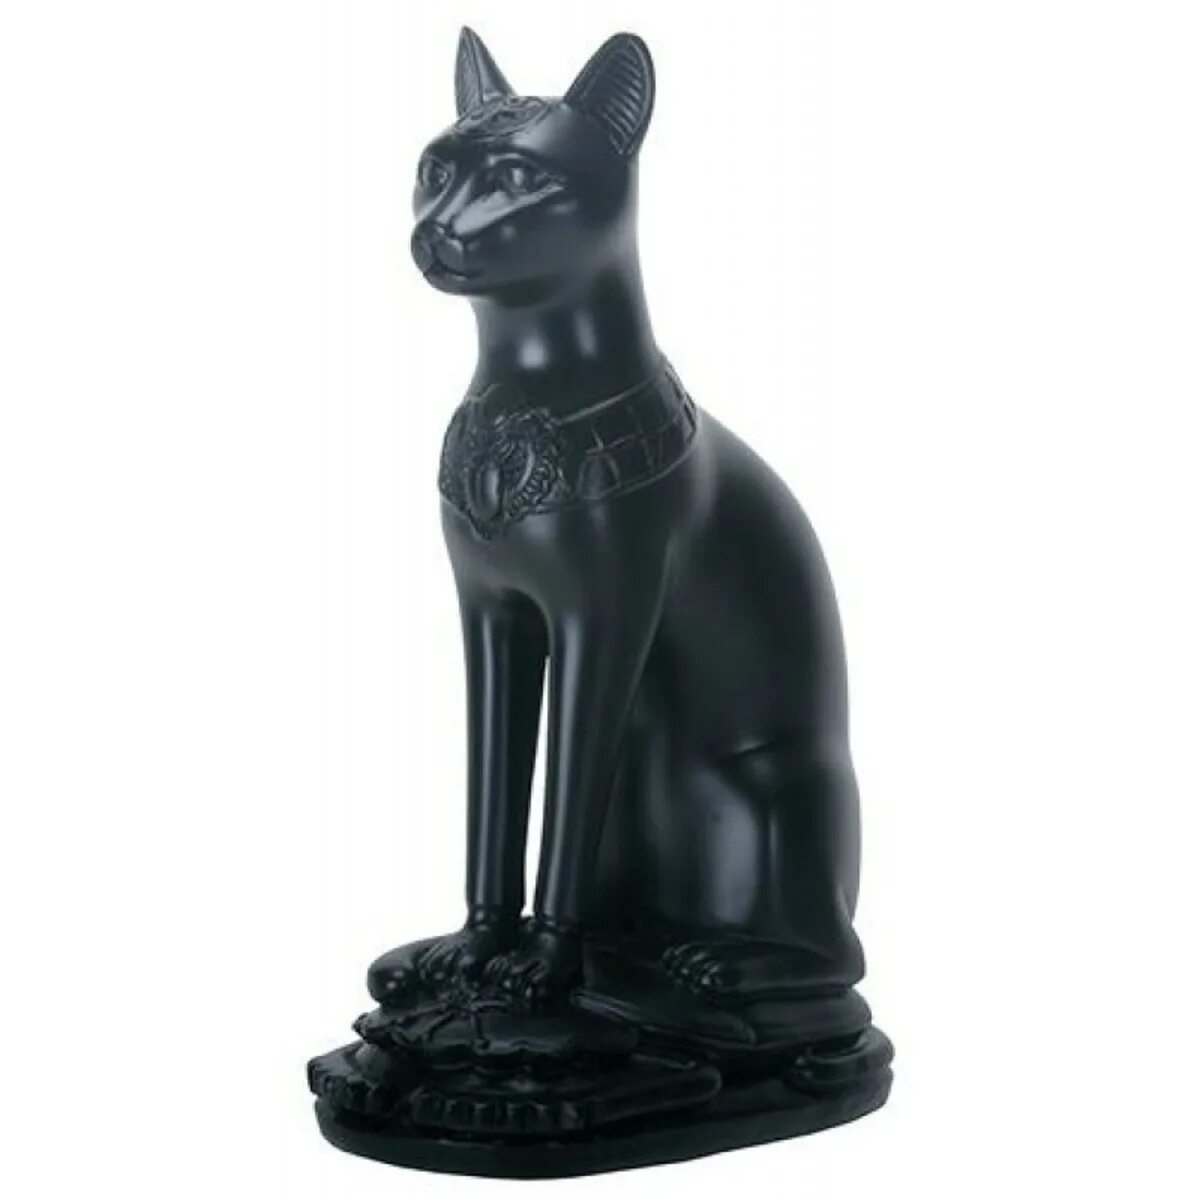 Богиня Бастет кошка черная. Статуя кошки Бастет. Статуэтка Бастет Египетская. Египетская статуэтка Богини Бастет.